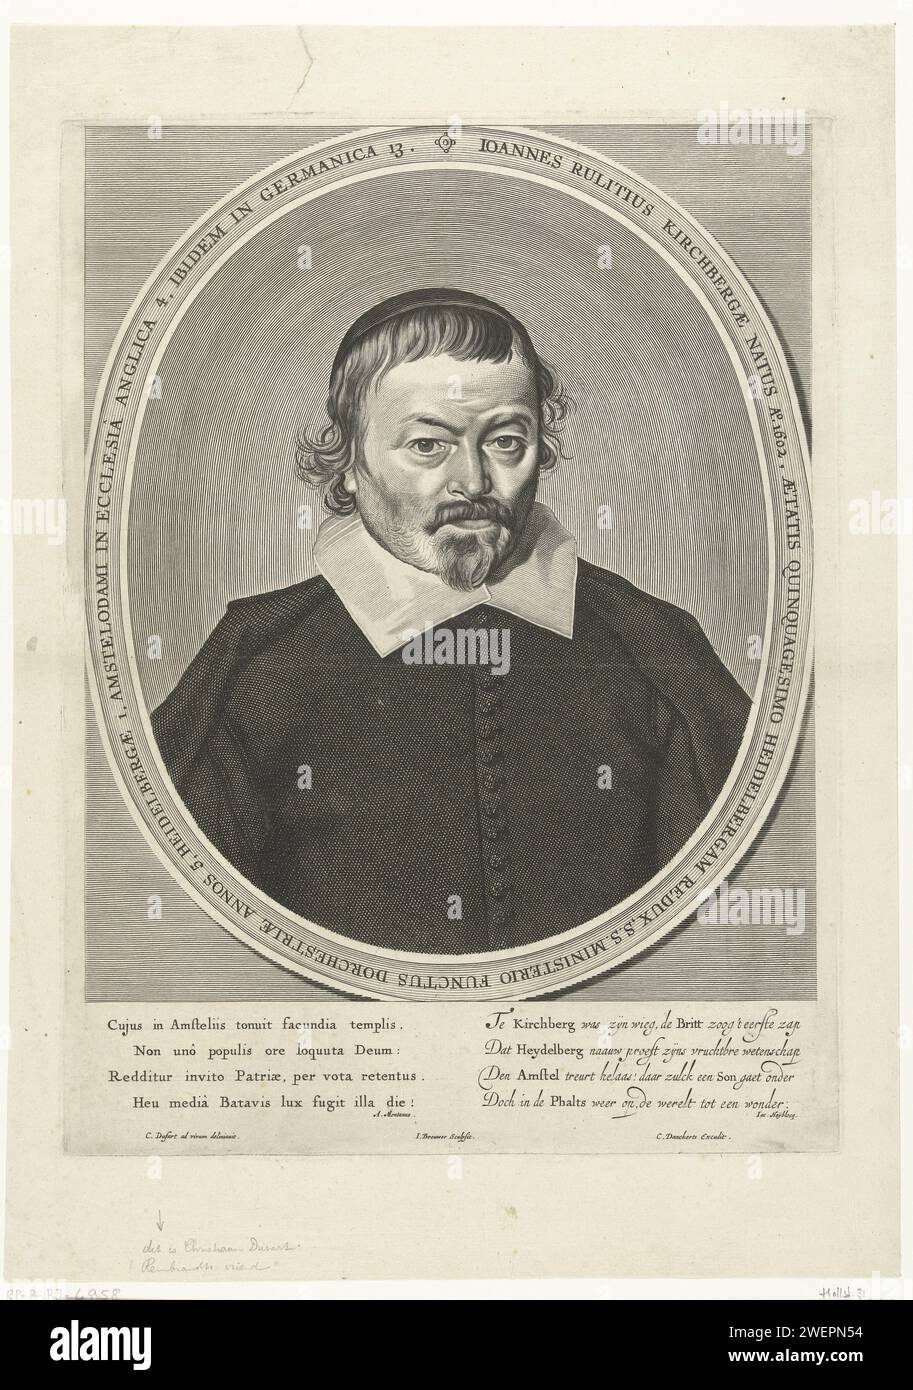 Porträt des Pfarrers Johannes Rulitius, Jan Brouwer, nach Christiaen Jansz. DuSart, nach Cornelis DuSart, 1652 - 1656 Druckpapierstich Stockfoto